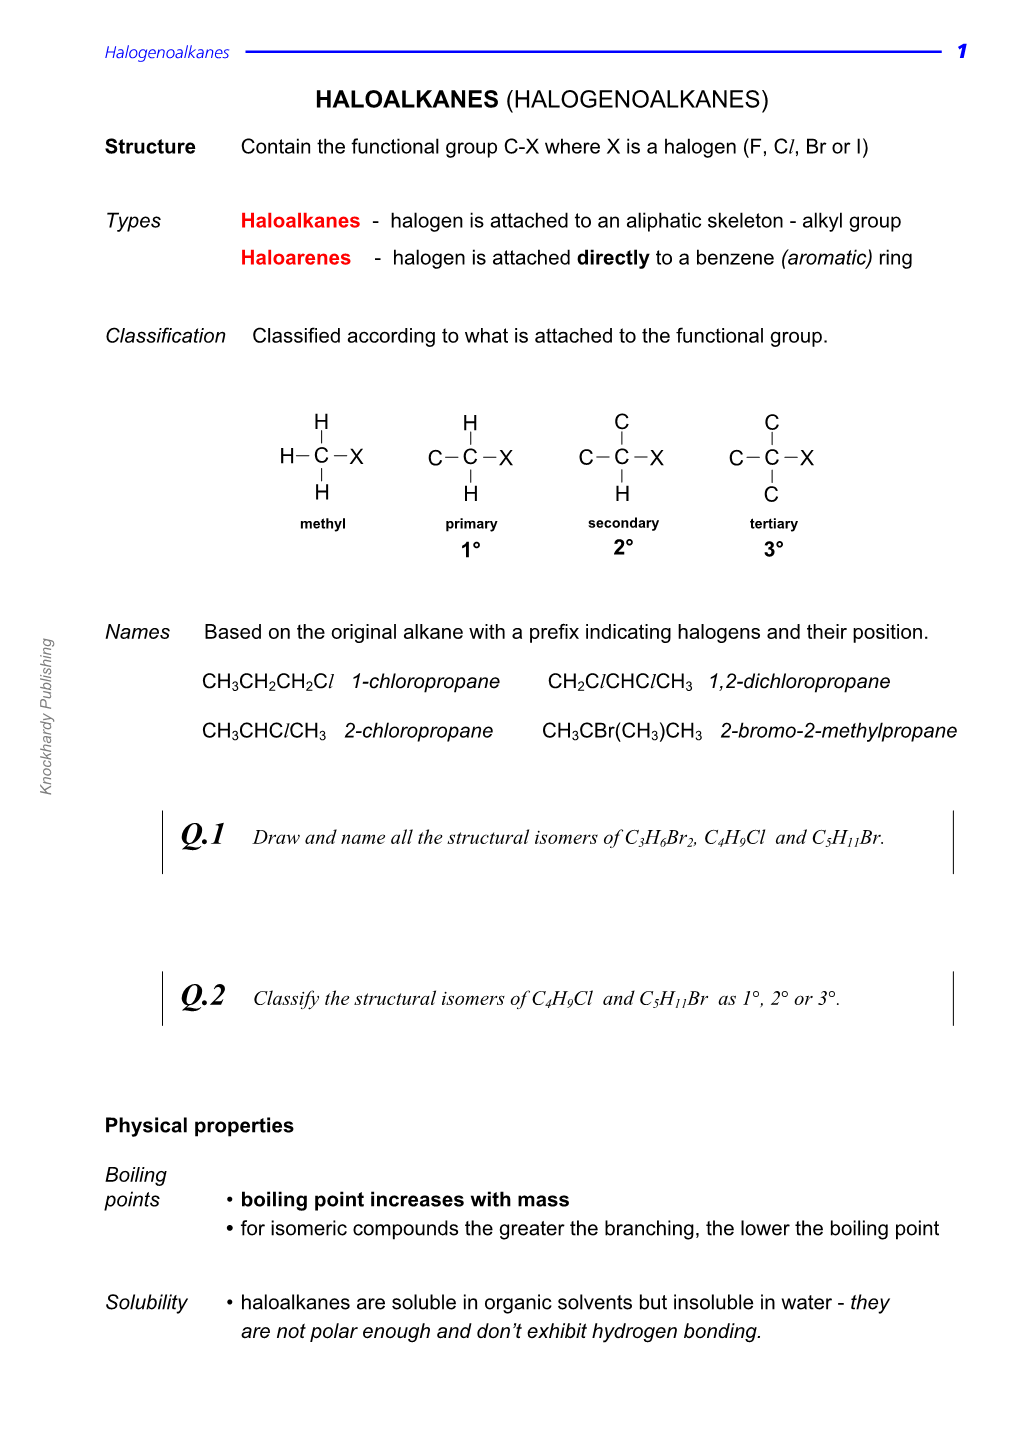 Haloalkanes (Halogenoalkanes)